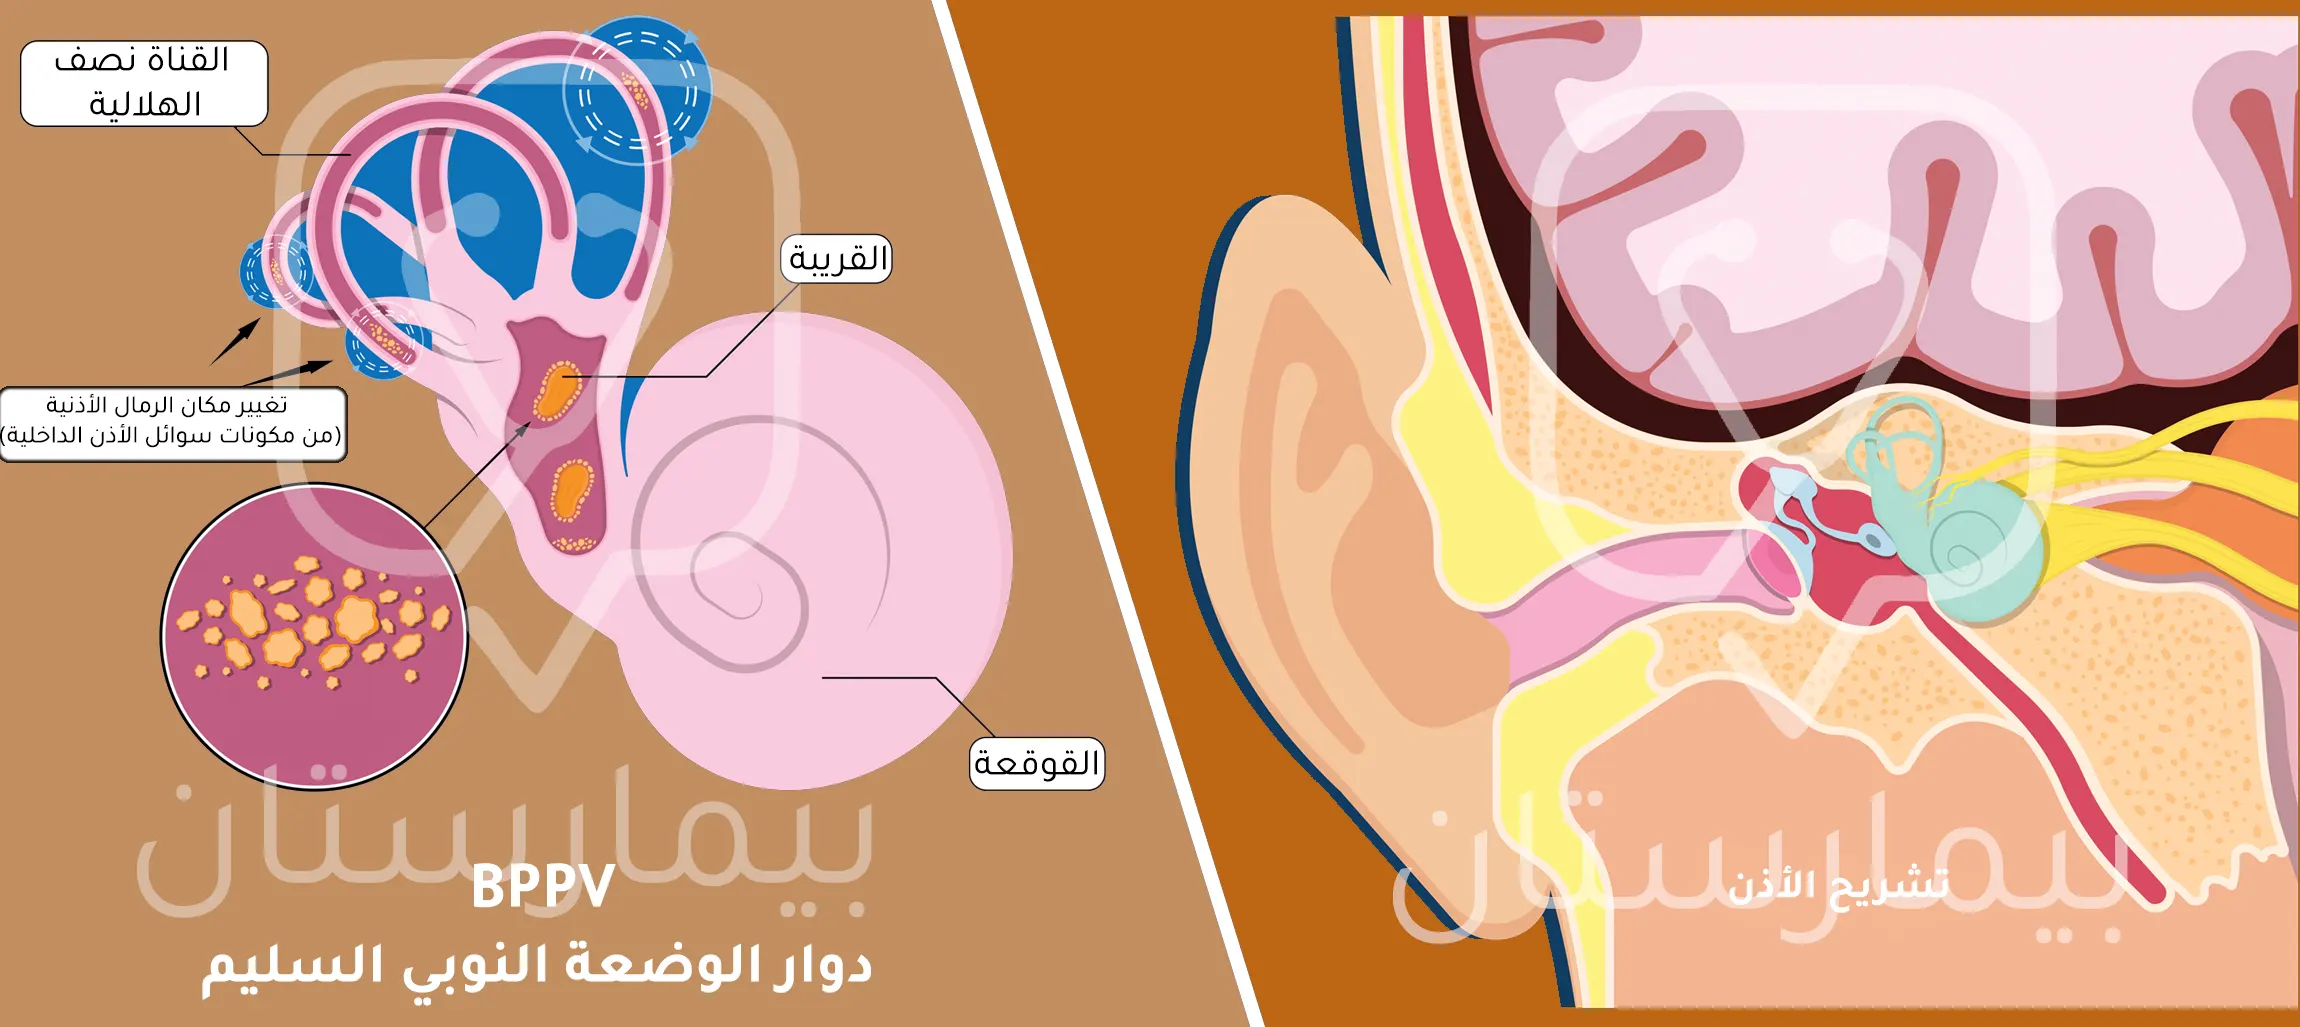 صورة توضح كيفية حدوث دوار الوضعة النوبي السليم (من أسباب الدوخة عند النساء) وكيف تتحرك الجزيئات خارج موقعها في الأذن الداخلية